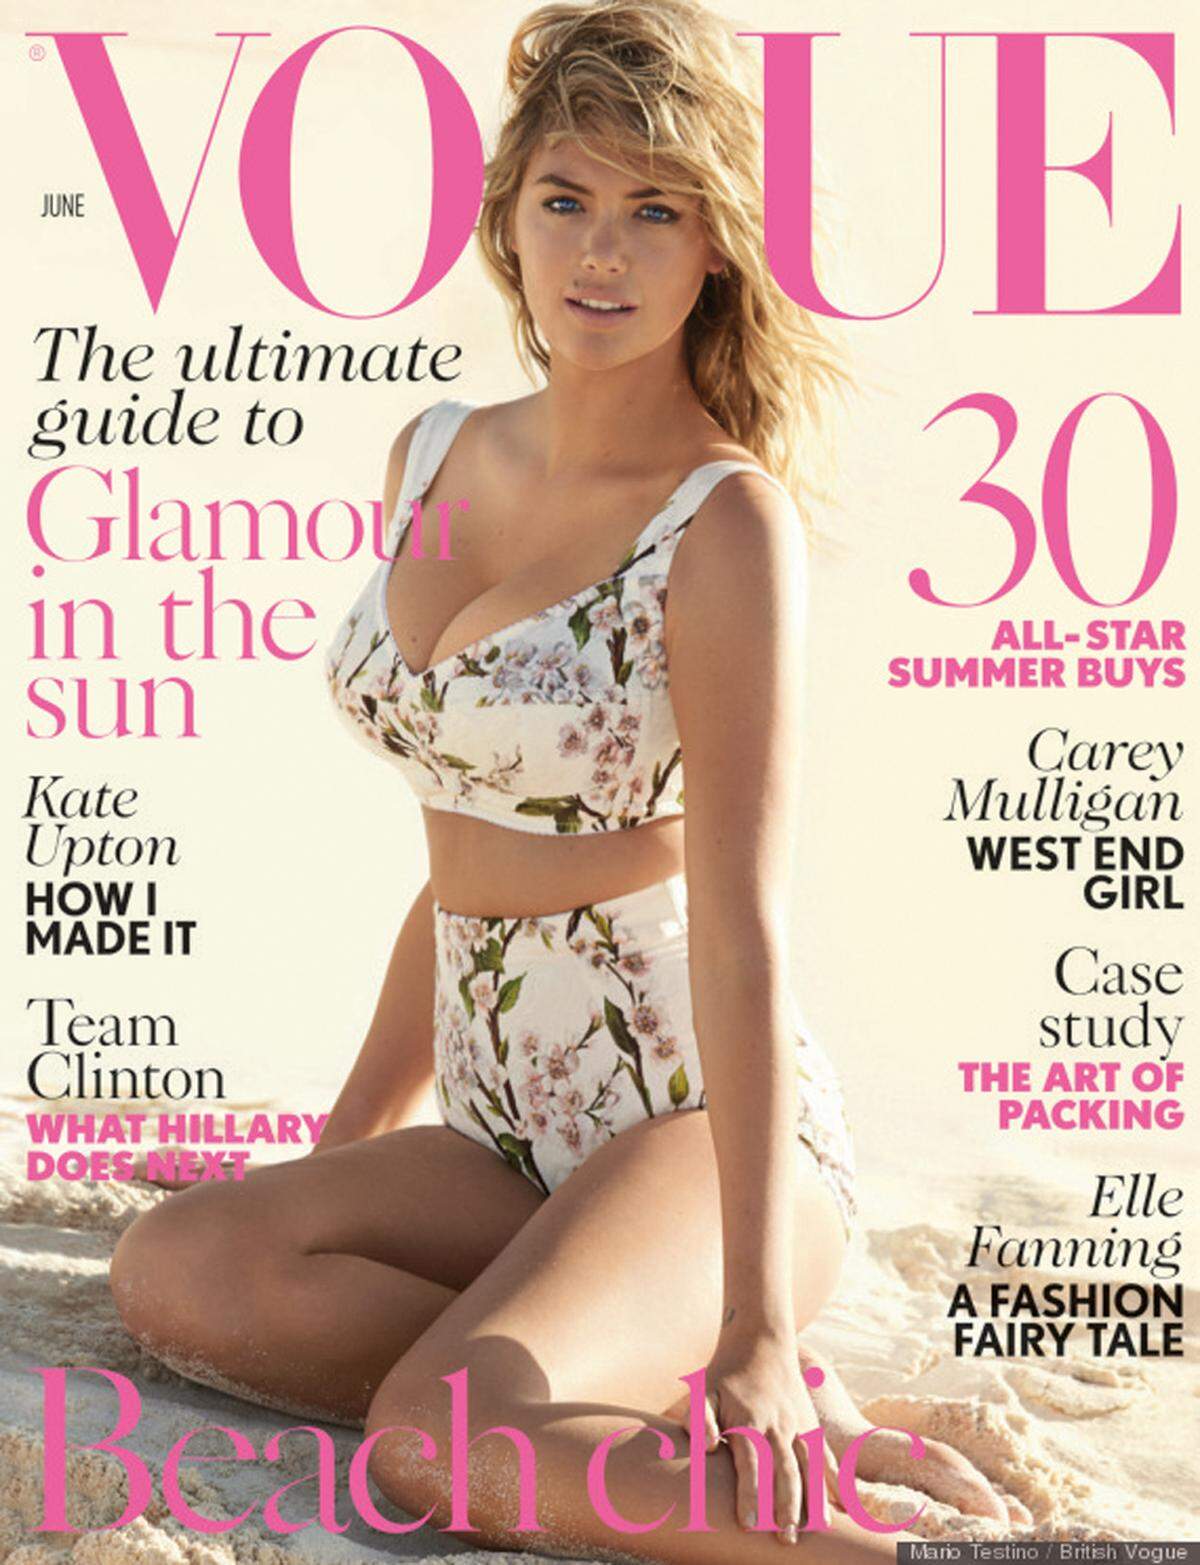 Die Modewelt hat den Busen entdeckt, wie das neueste Cover mit Kate Upton der britischen Vogue beweist und auch der dazu passende Artikel "Return of the Bosom" dokumentiert.